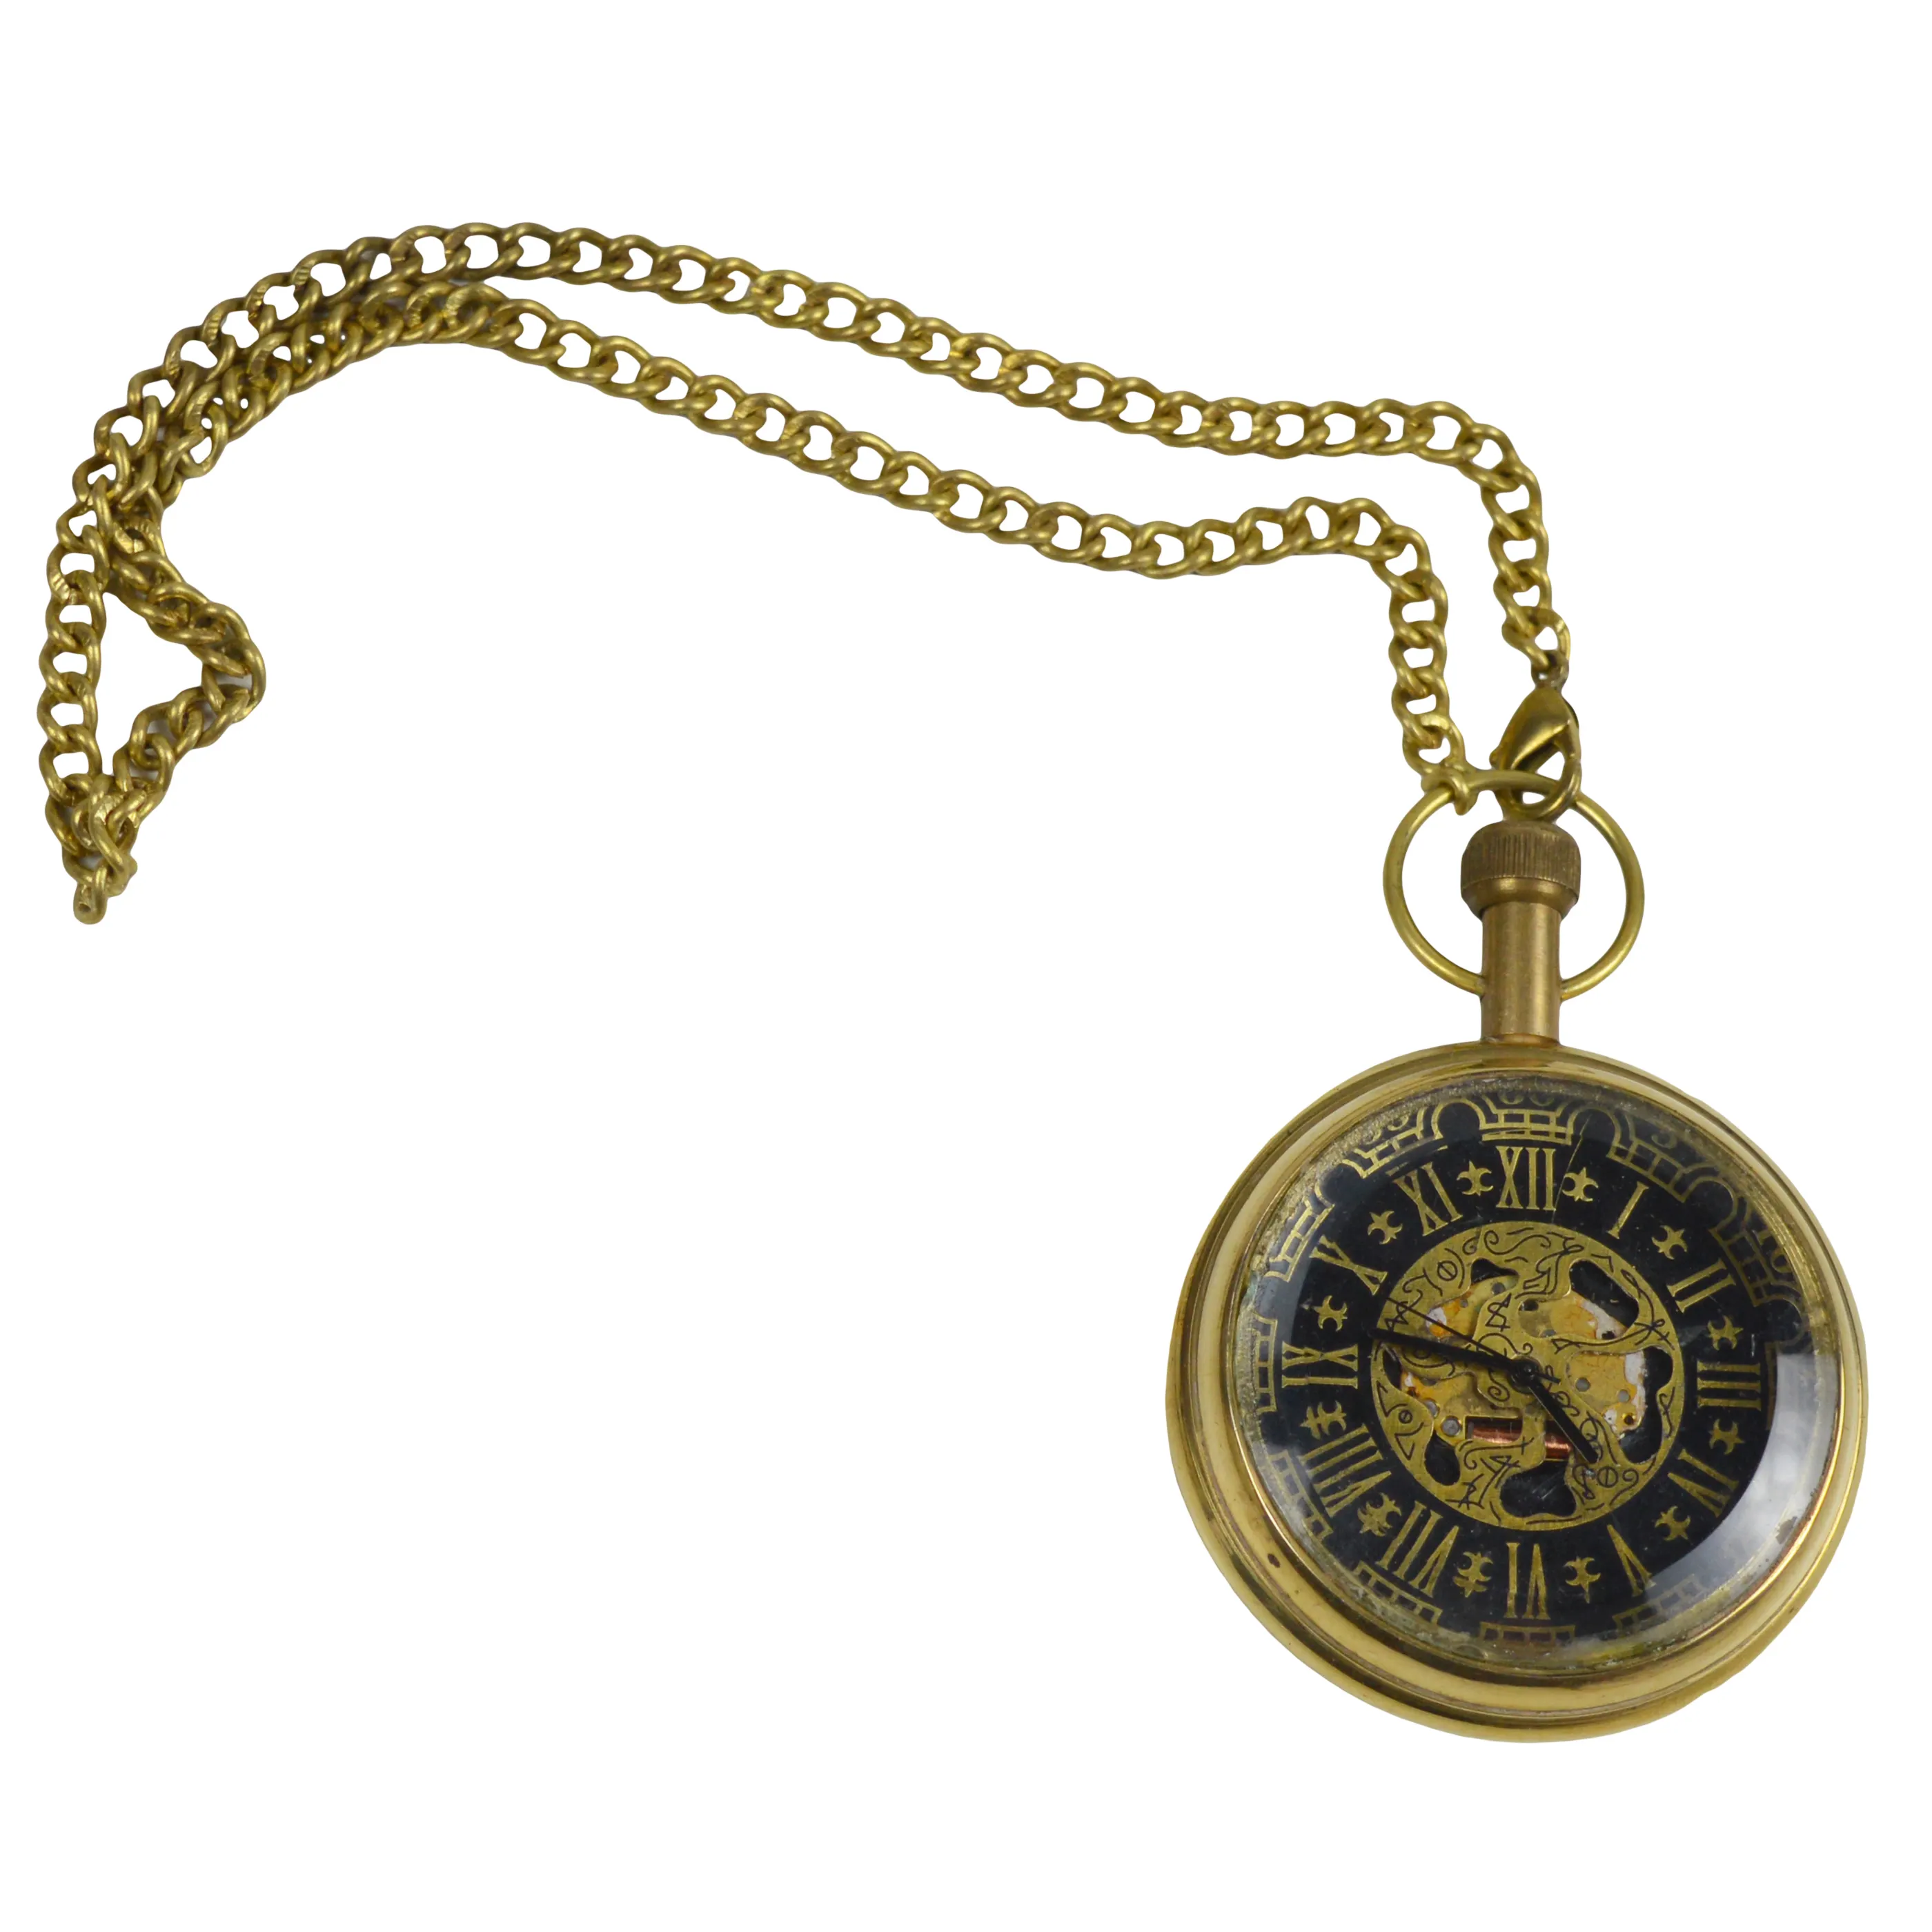 Reloj de bolsillo para hombre, de diseño exclusivo, de Metal y latón, calidad Original, el mejor reloj colgante